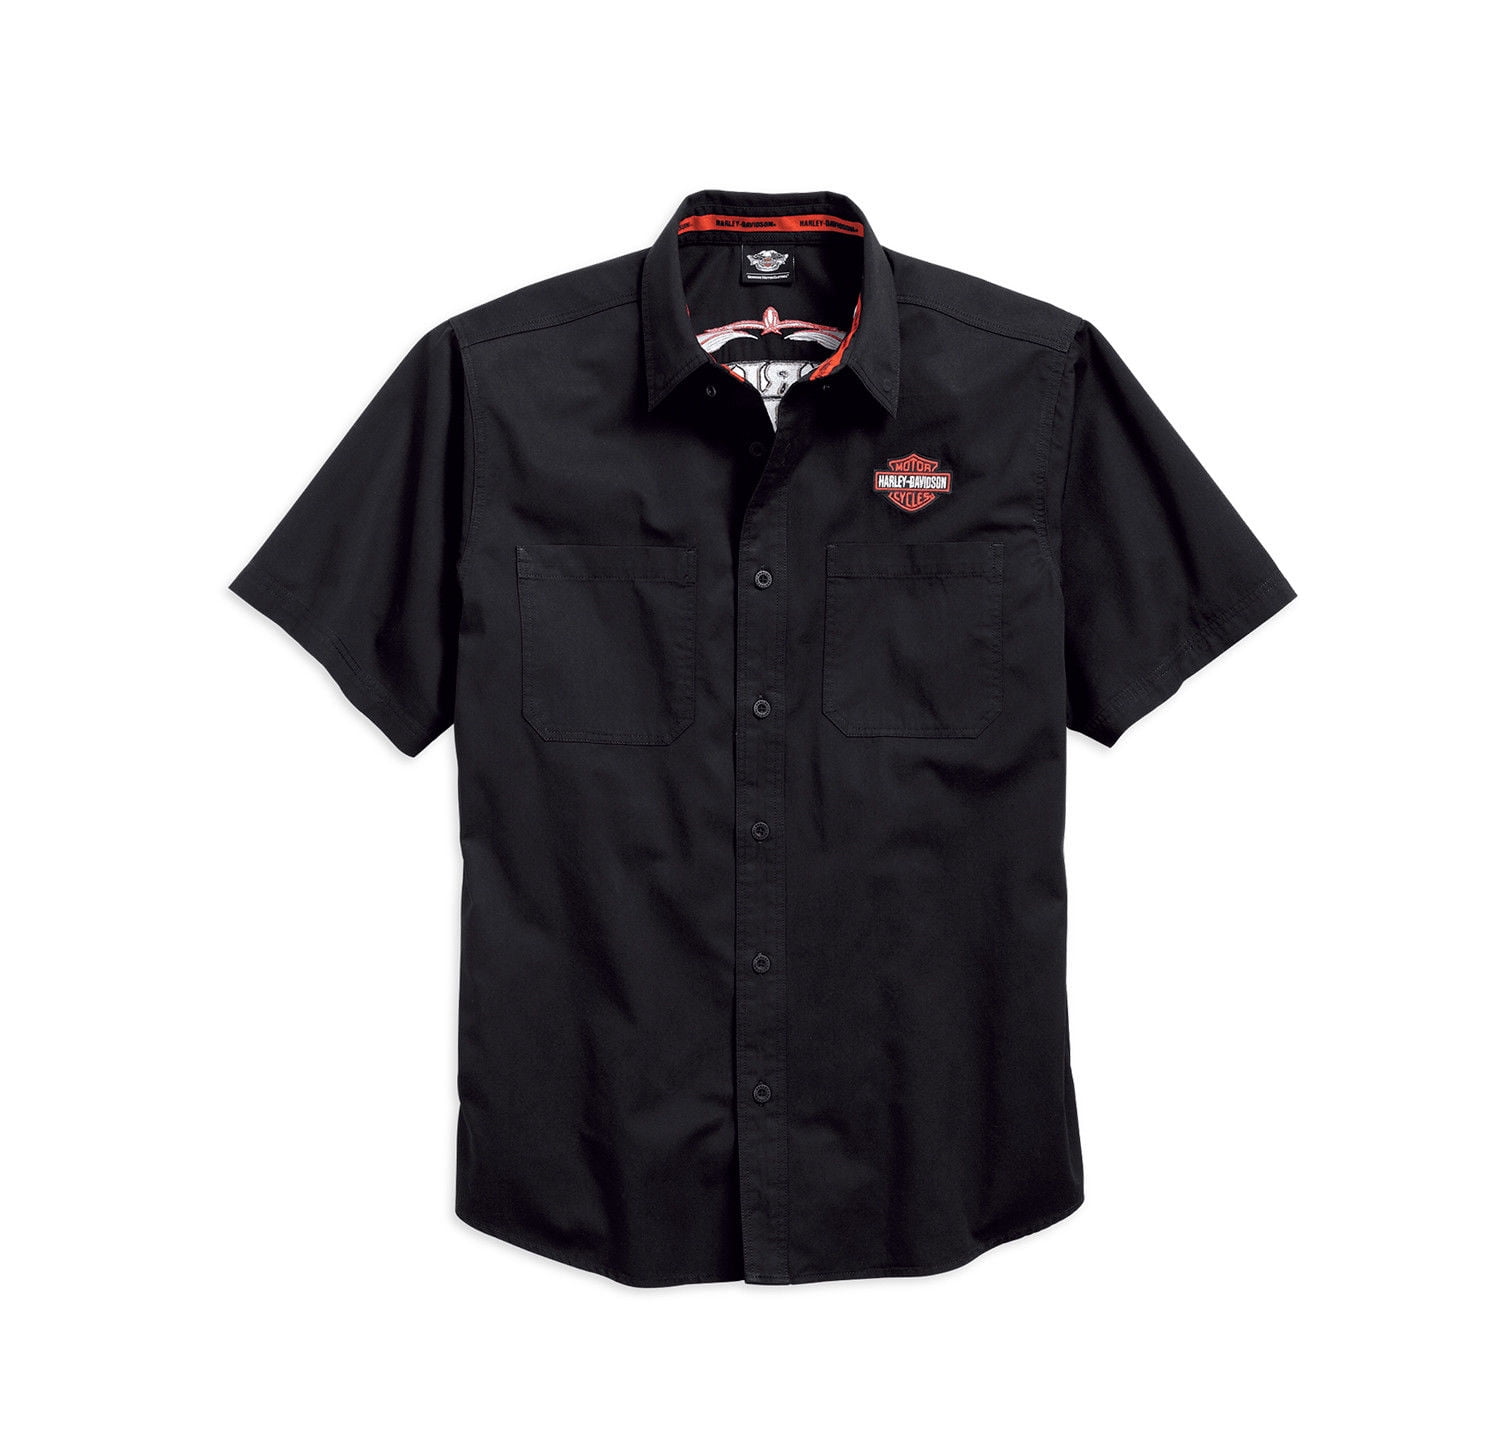 Harley-Davidson Men's Pinstripe Flames Button Woven Shirt, Black 99049 ...